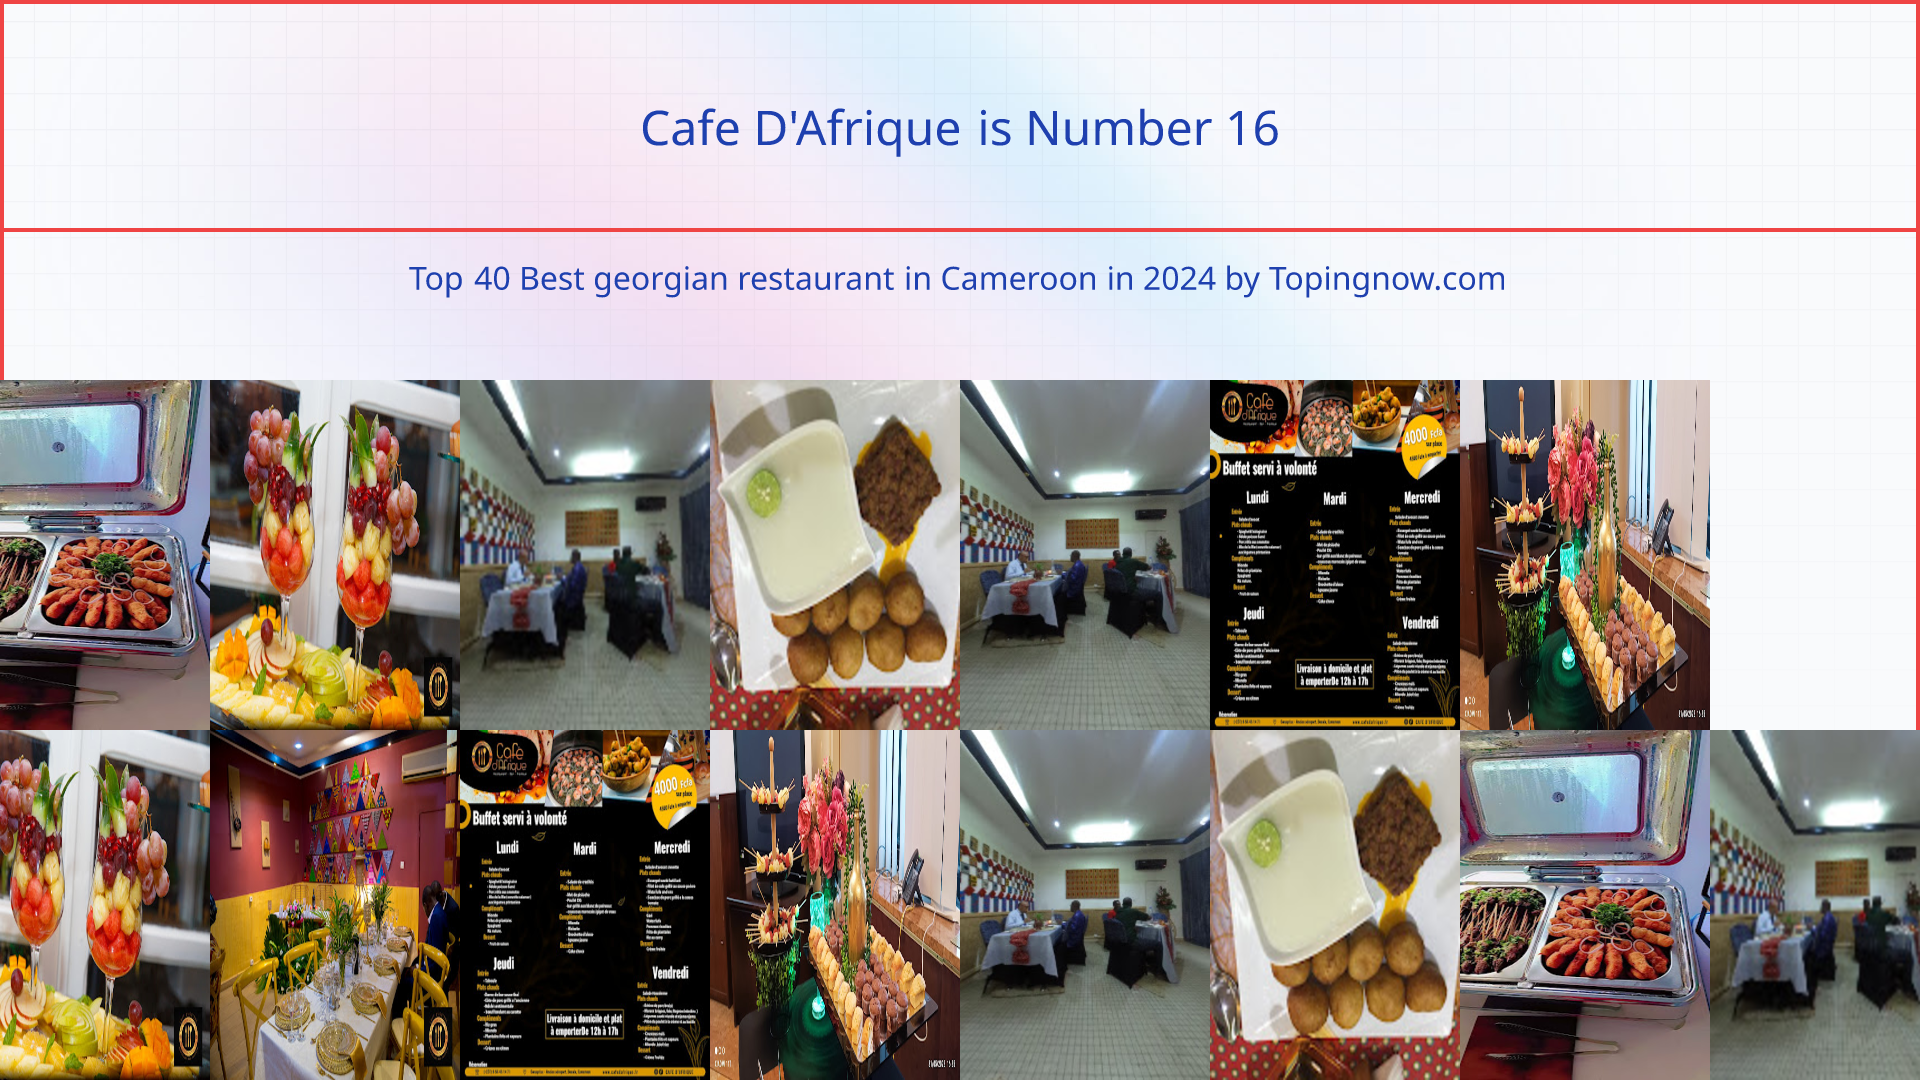 Cafe D'Afrique: Top 40 Best georgian restaurant in Cameroon in 2024